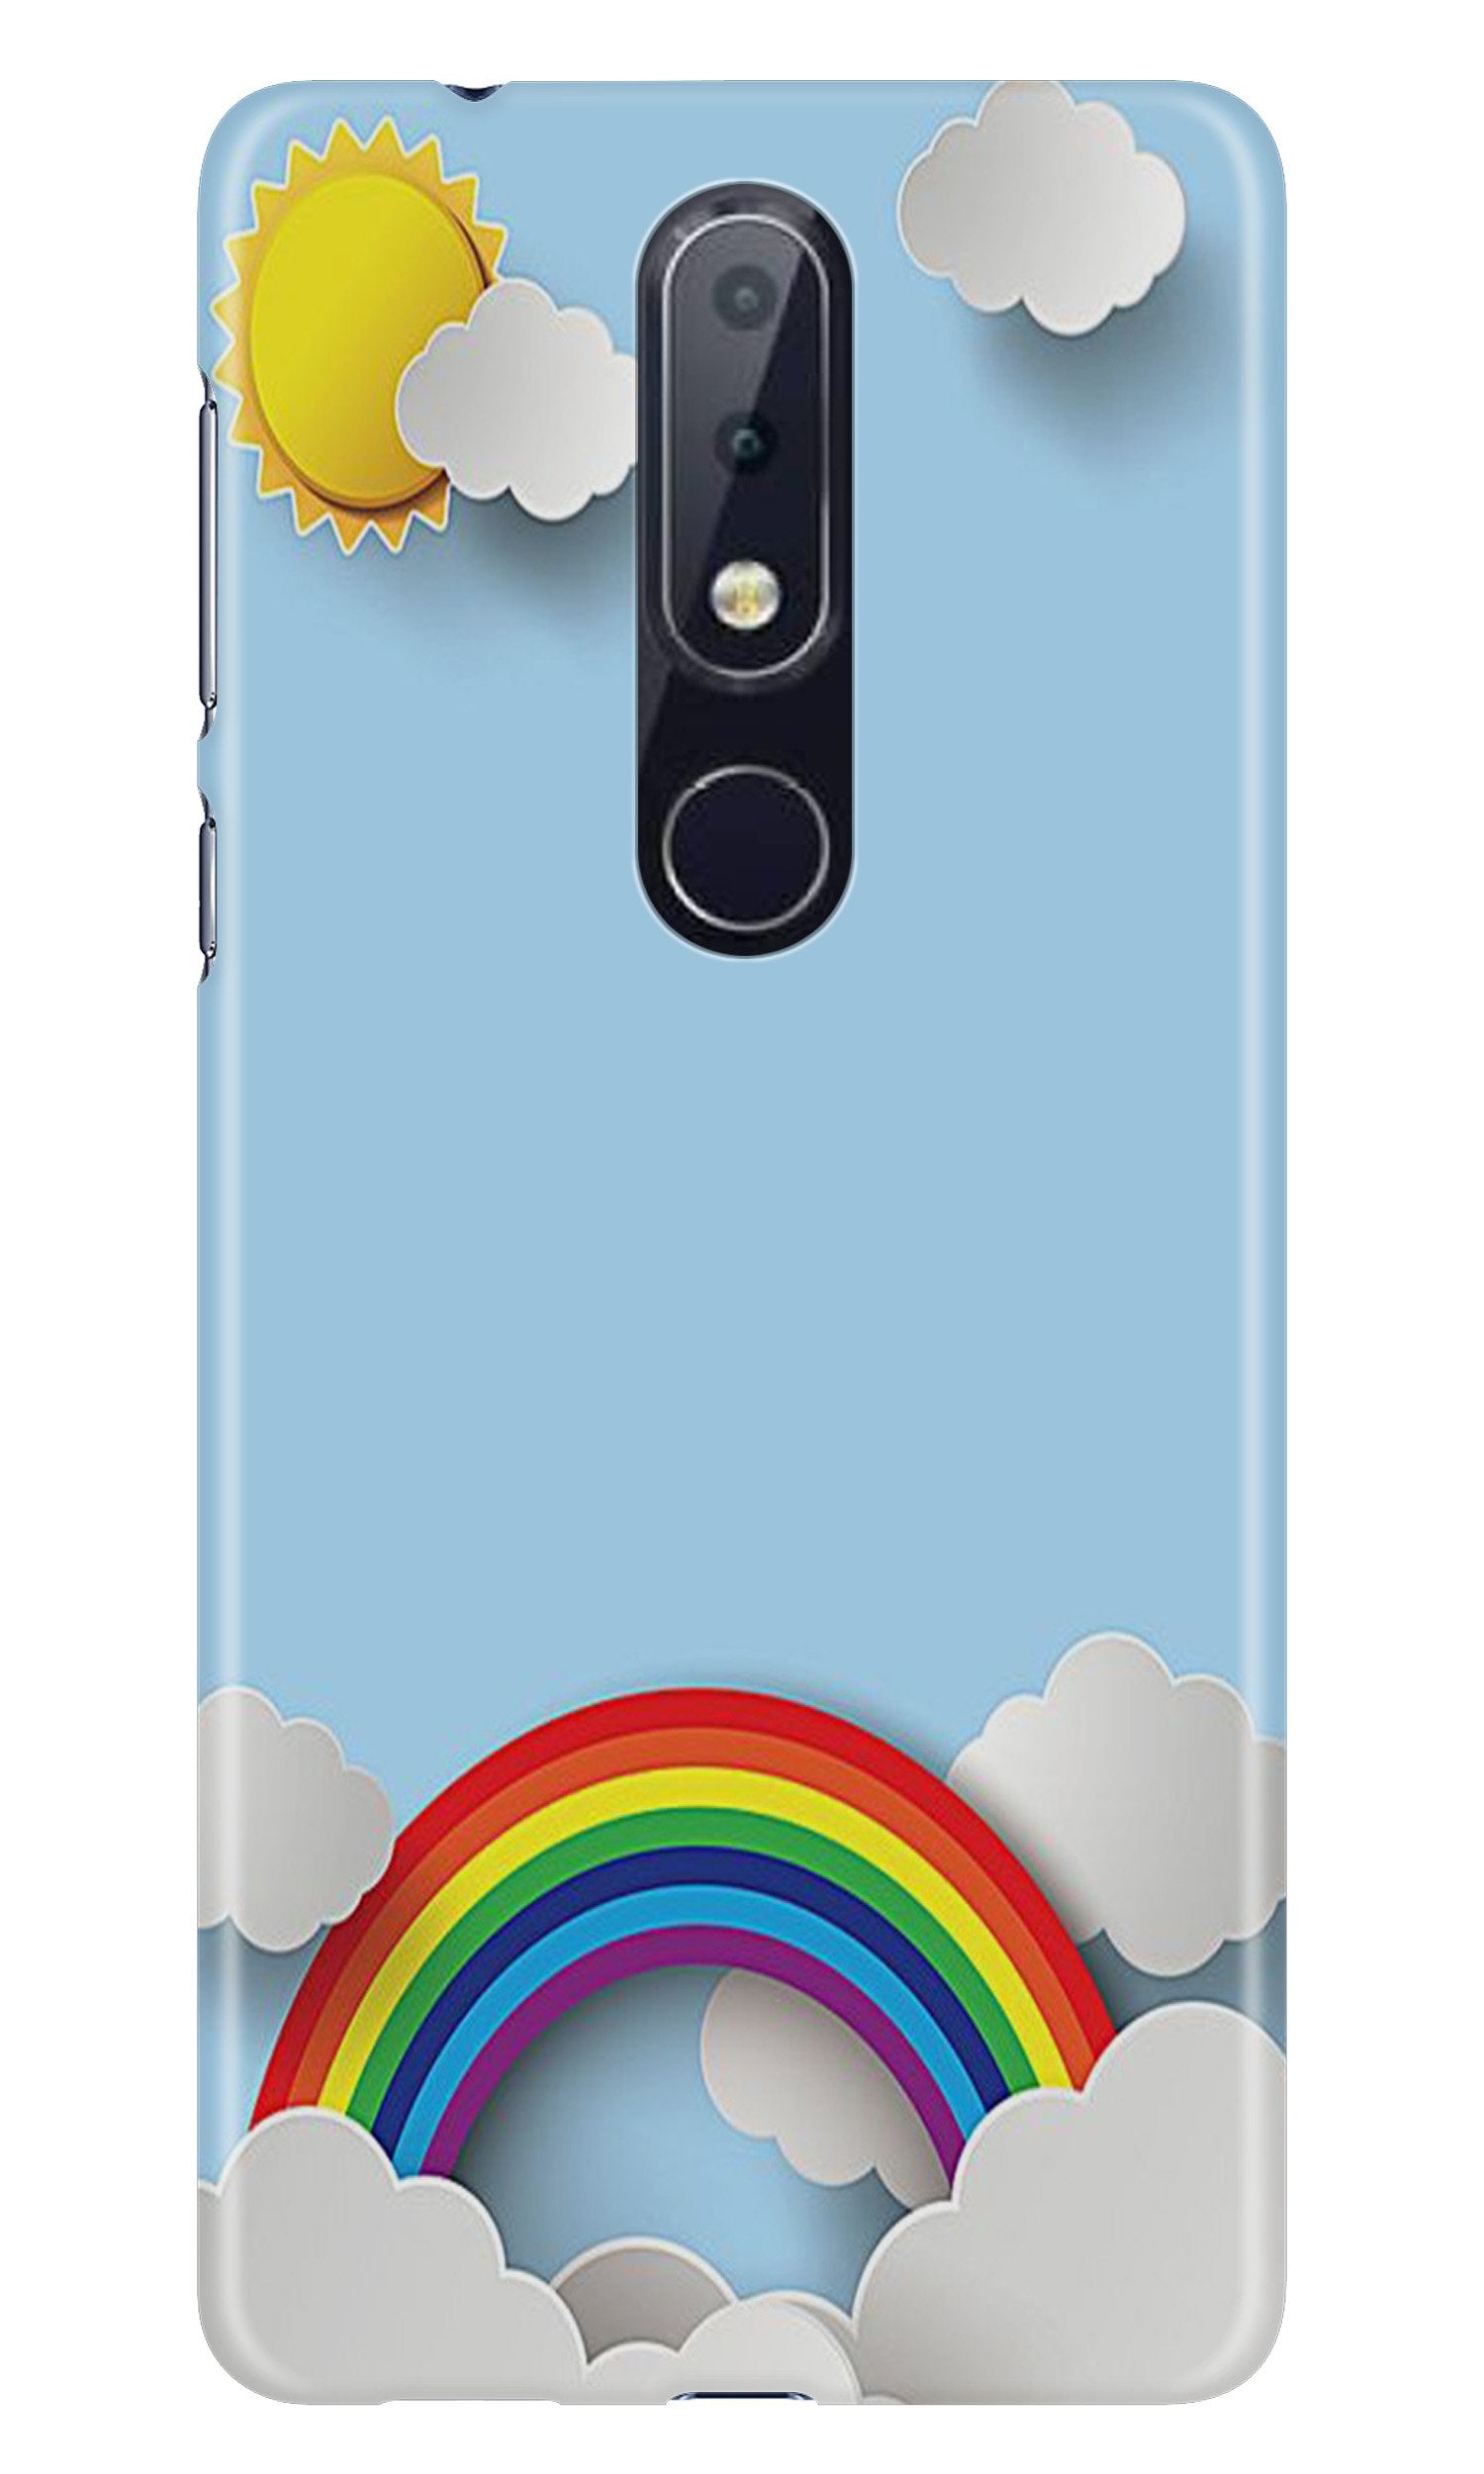 Rainbow Case for Nokia 7.1 (Design No. 225)